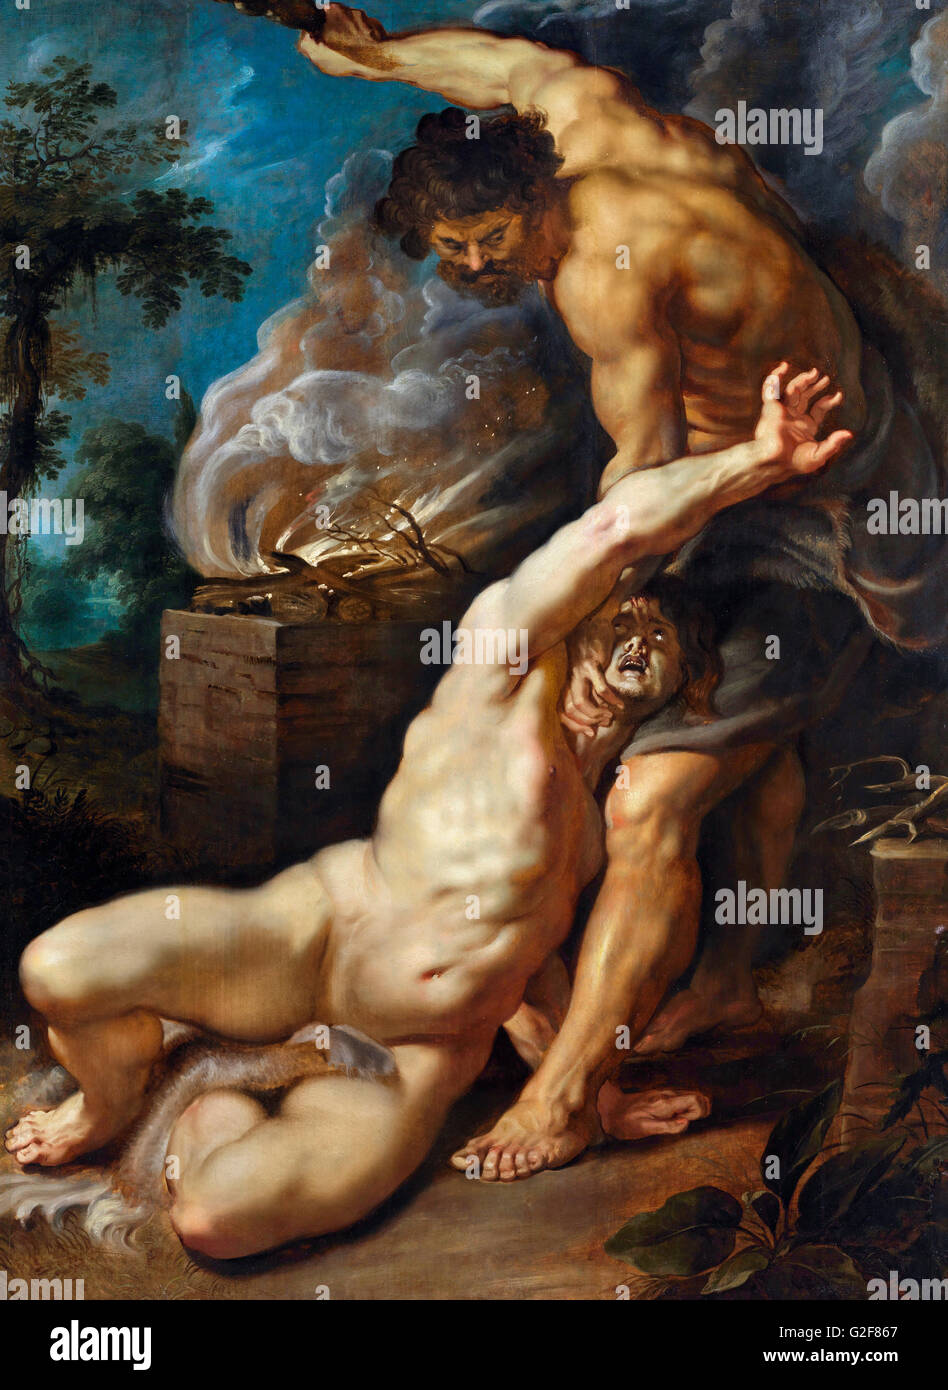 Kain tötet Abel von Rubens, Öl auf Holz, c.1608-09. Kain und Abel waren die beiden ältesten Söhne von Adam und Eva und dieses Gemälde zeigt Kain seinen Bruder erschlagen. Stockfoto